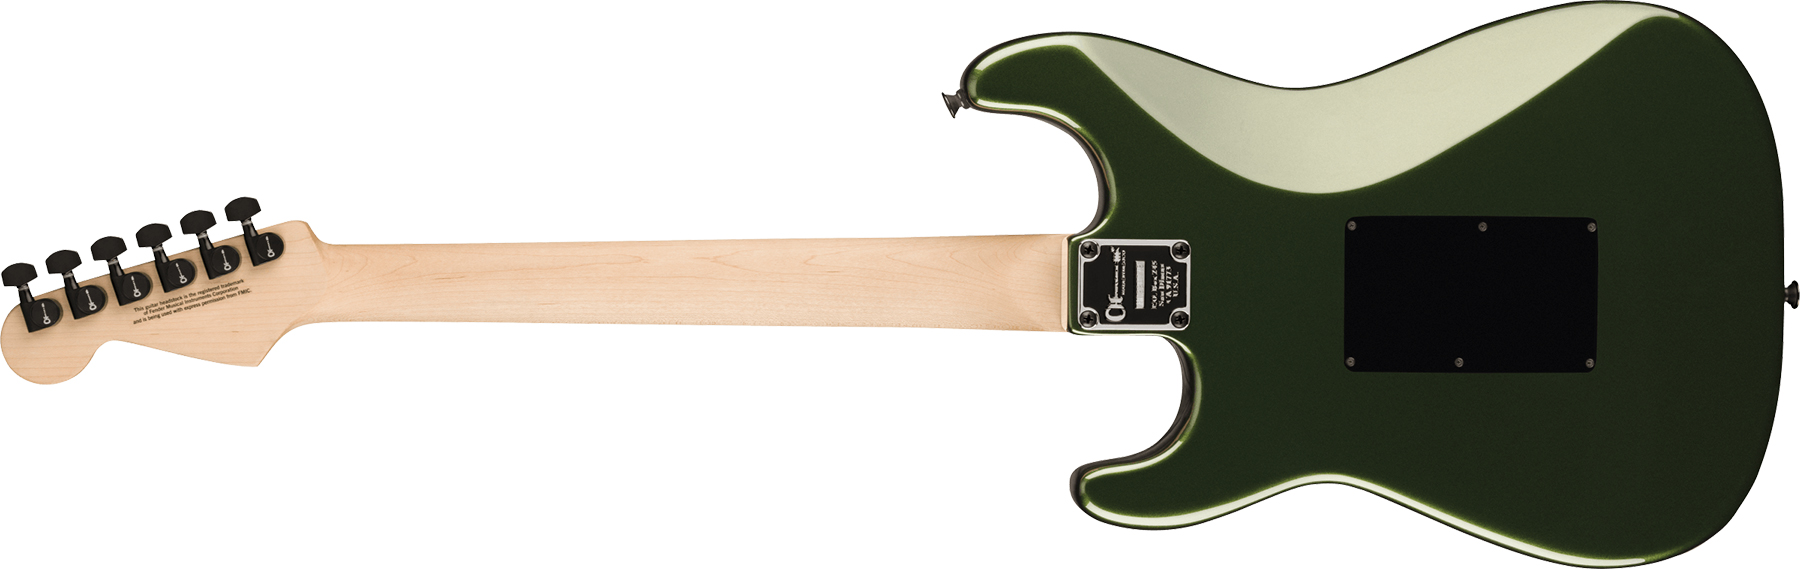 Charvel So-cal Style 1 Hss Fr E Pro-mod Seymour Duncan Eb - Lambo Green - E-Gitarre in Str-Form - Variation 1